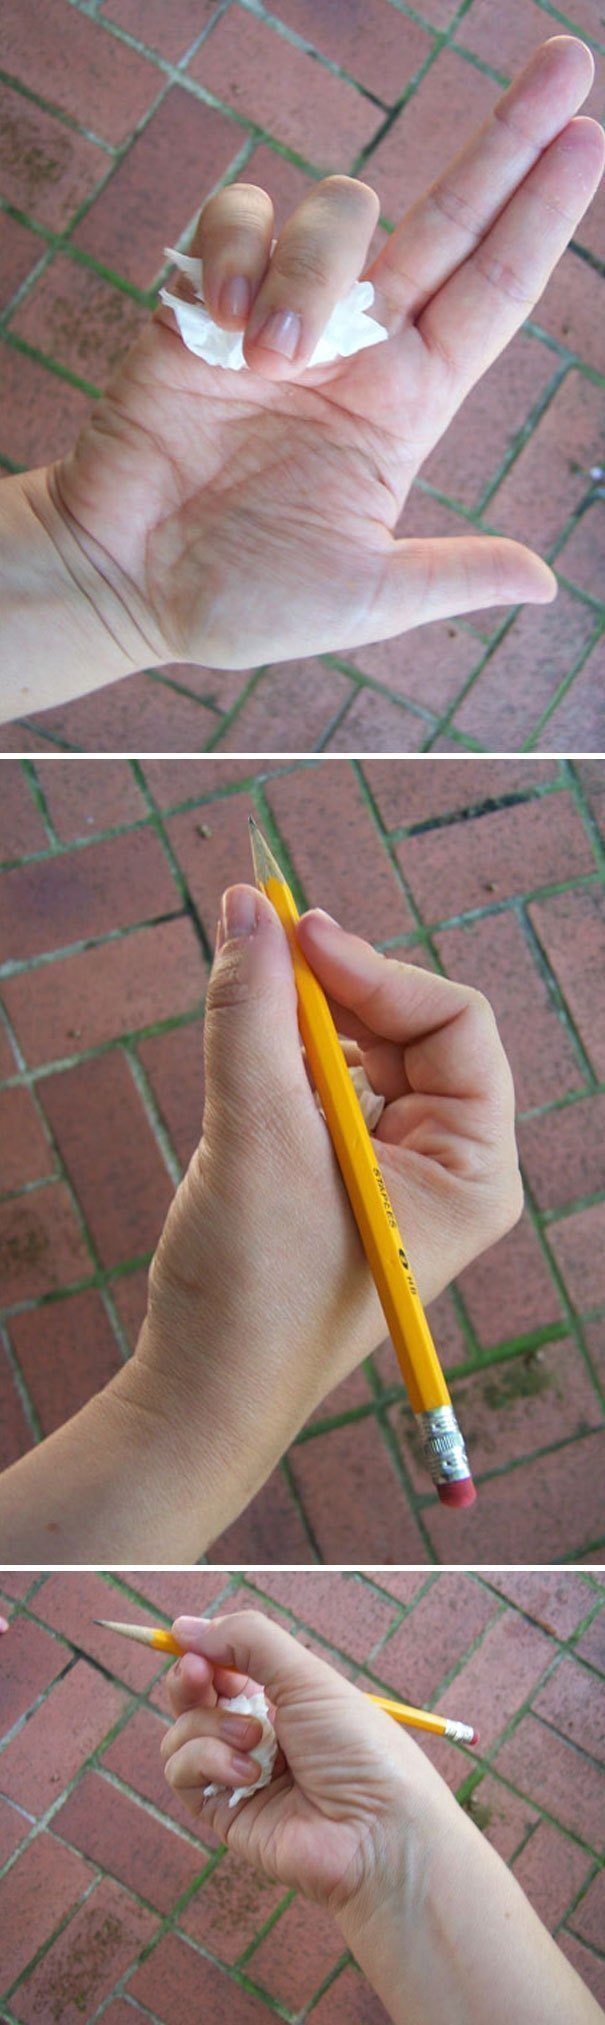 18. «Обычный бумажный платочек поможет научить ребёнка правильно держать карандаш»